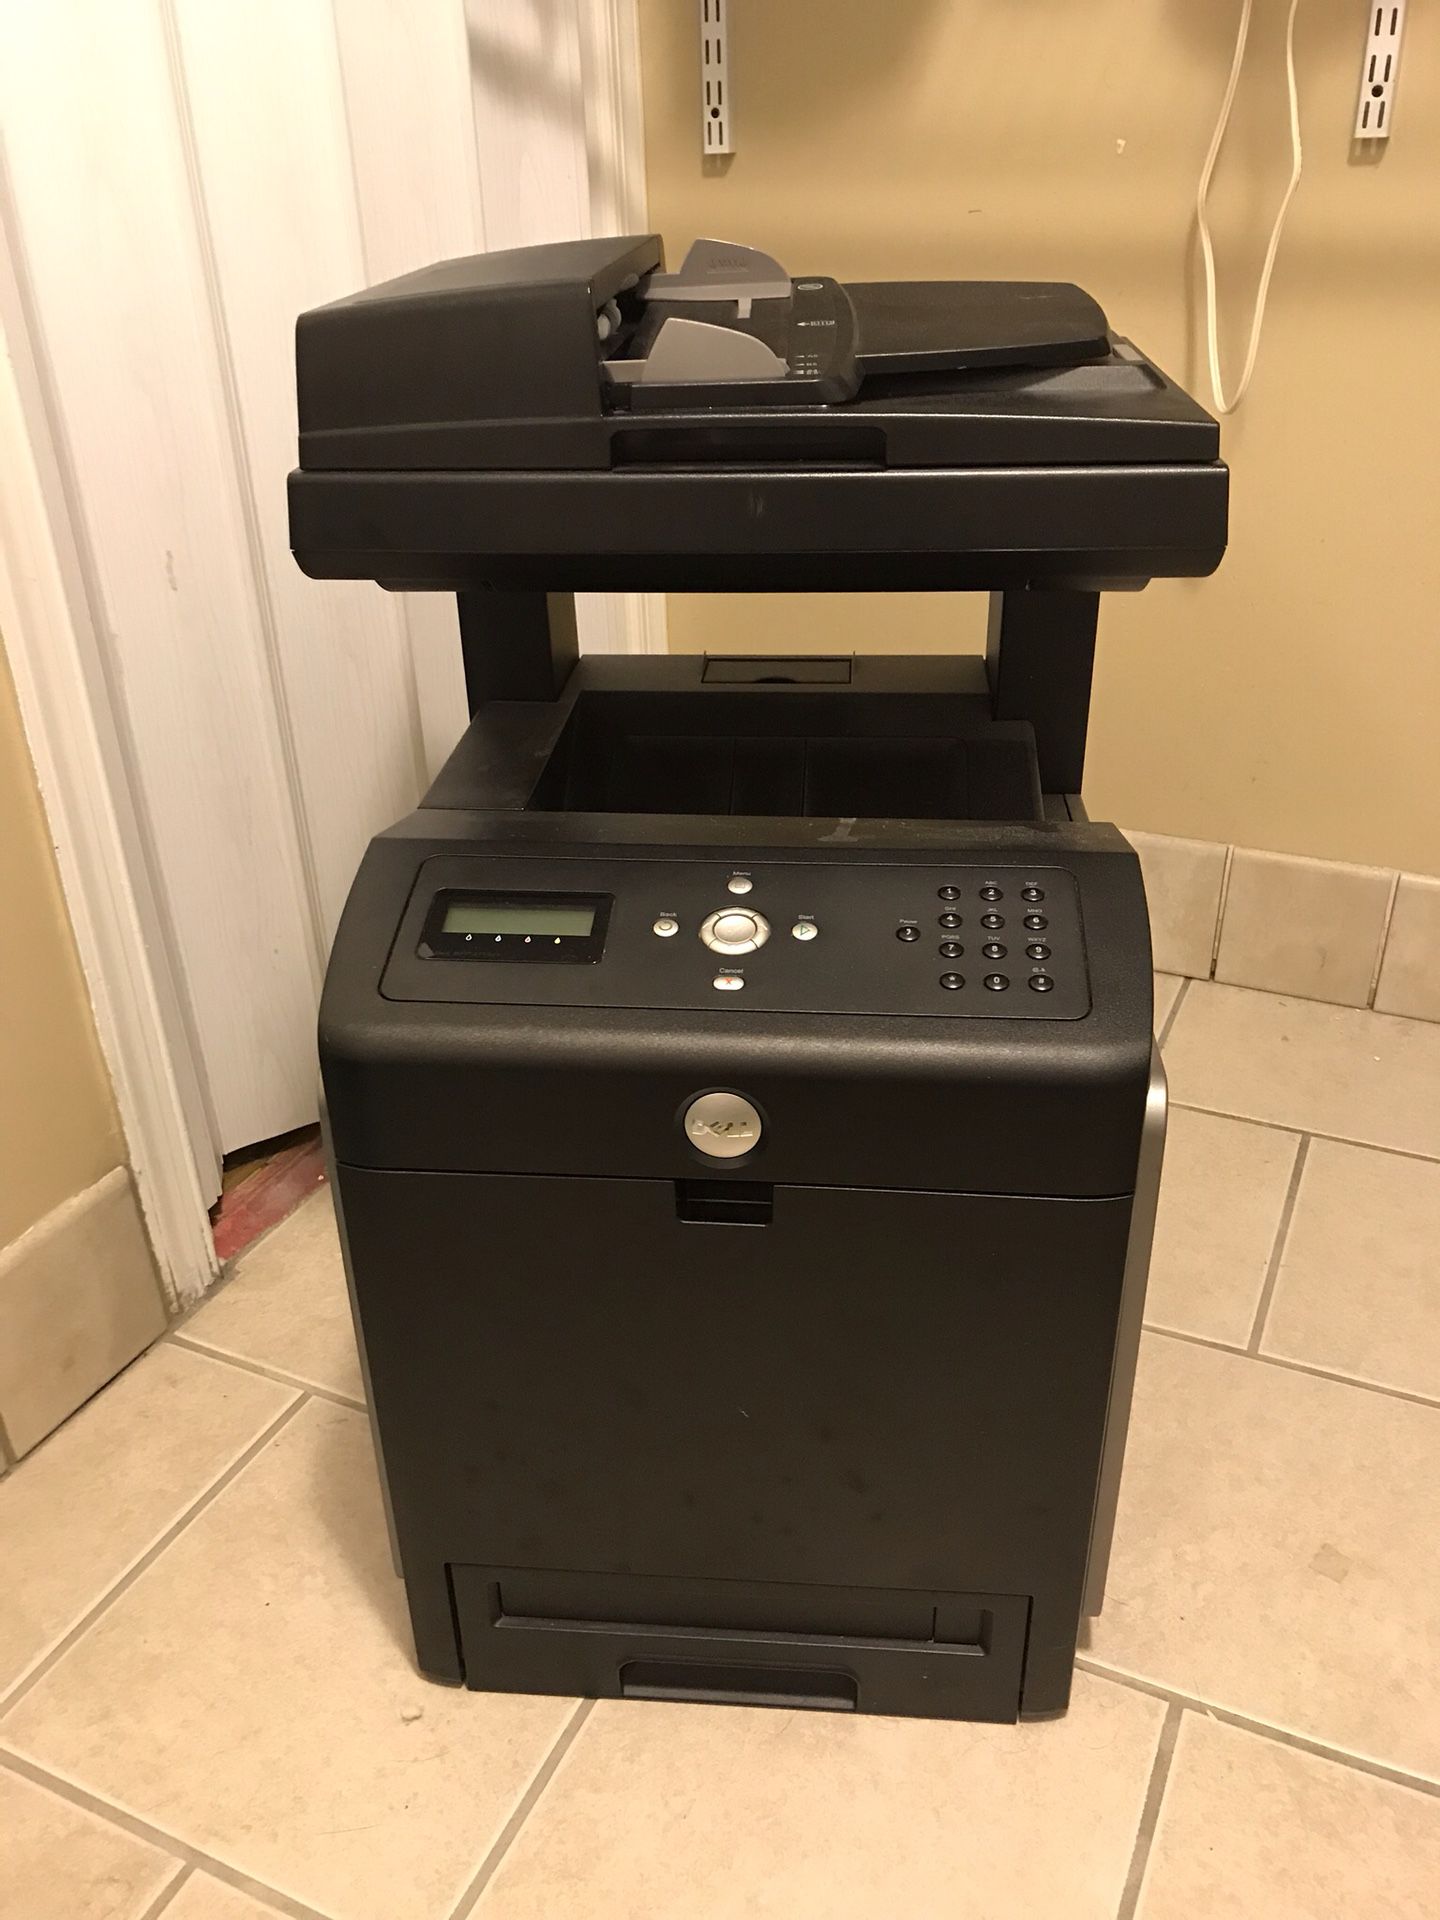 Dell multifunction laser printer